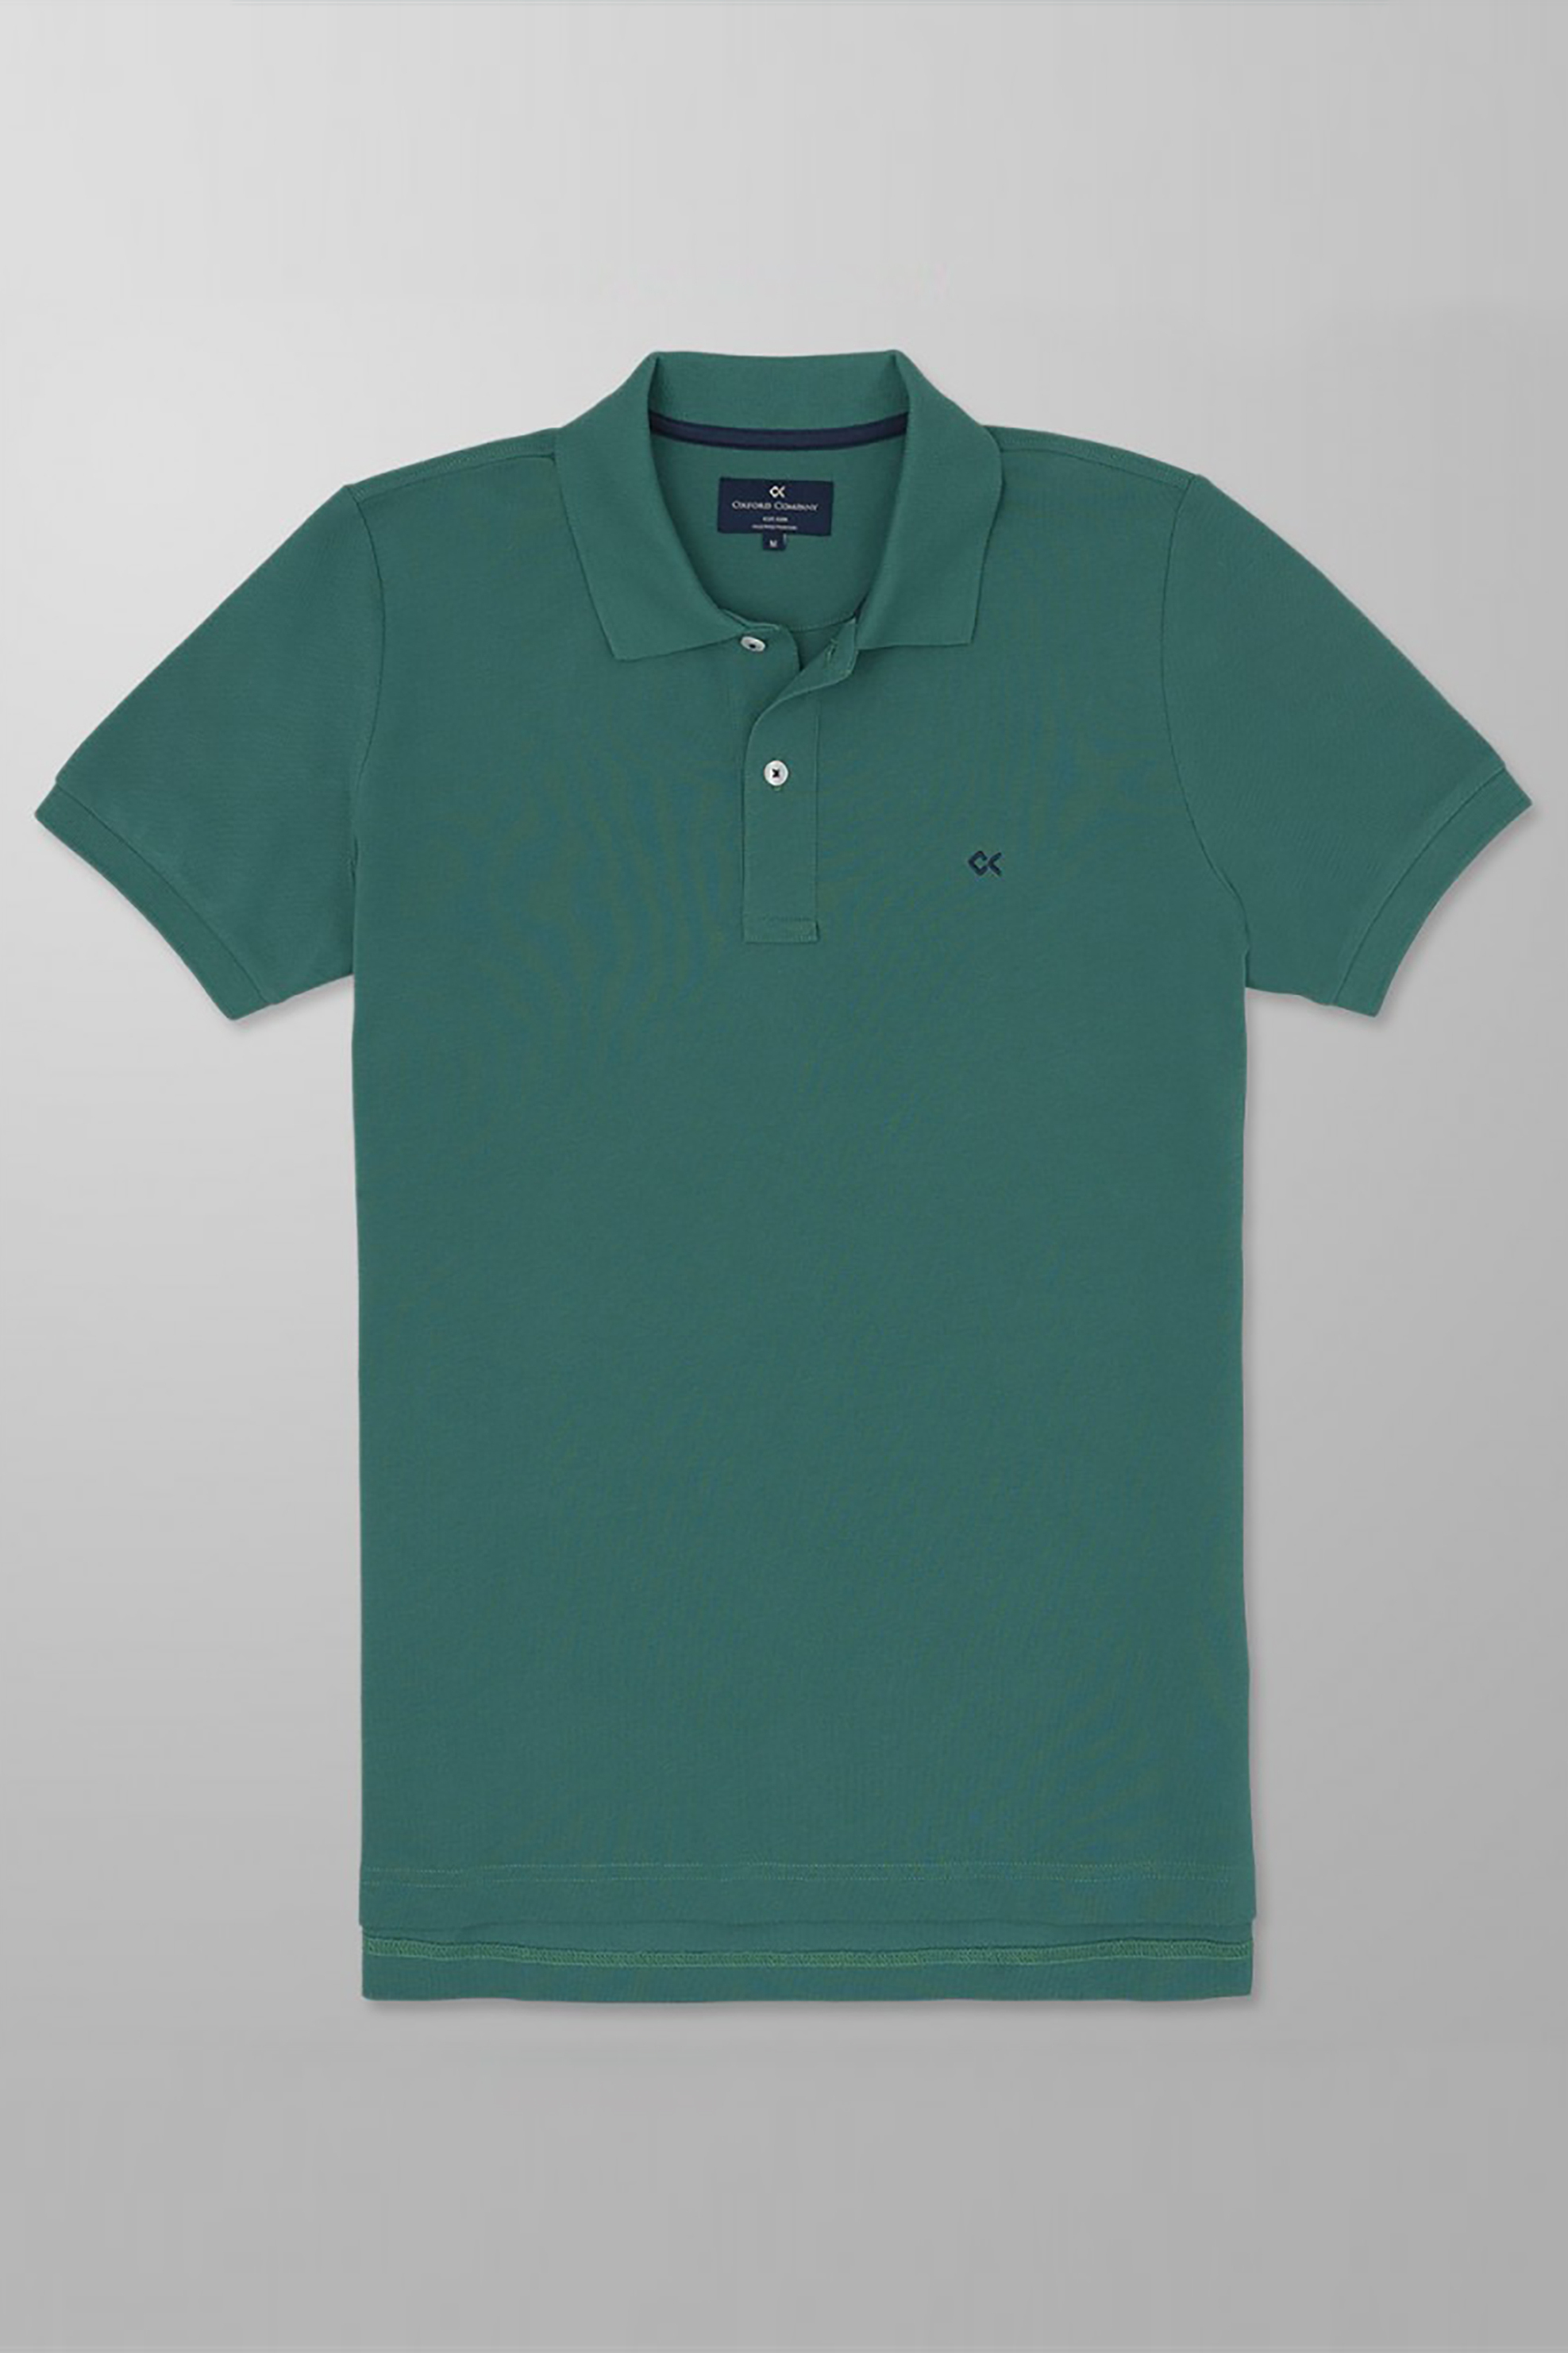 Ανδρική Μόδα > Ανδρικά Ρούχα > Ανδρικές Μπλούζες > Ανδρικές Μπλούζες Πολο Oxford Company ανδρική πόλο μπλούζα με κεντημένο logo Slim Fit - P414-PR00.15 Πράσινο